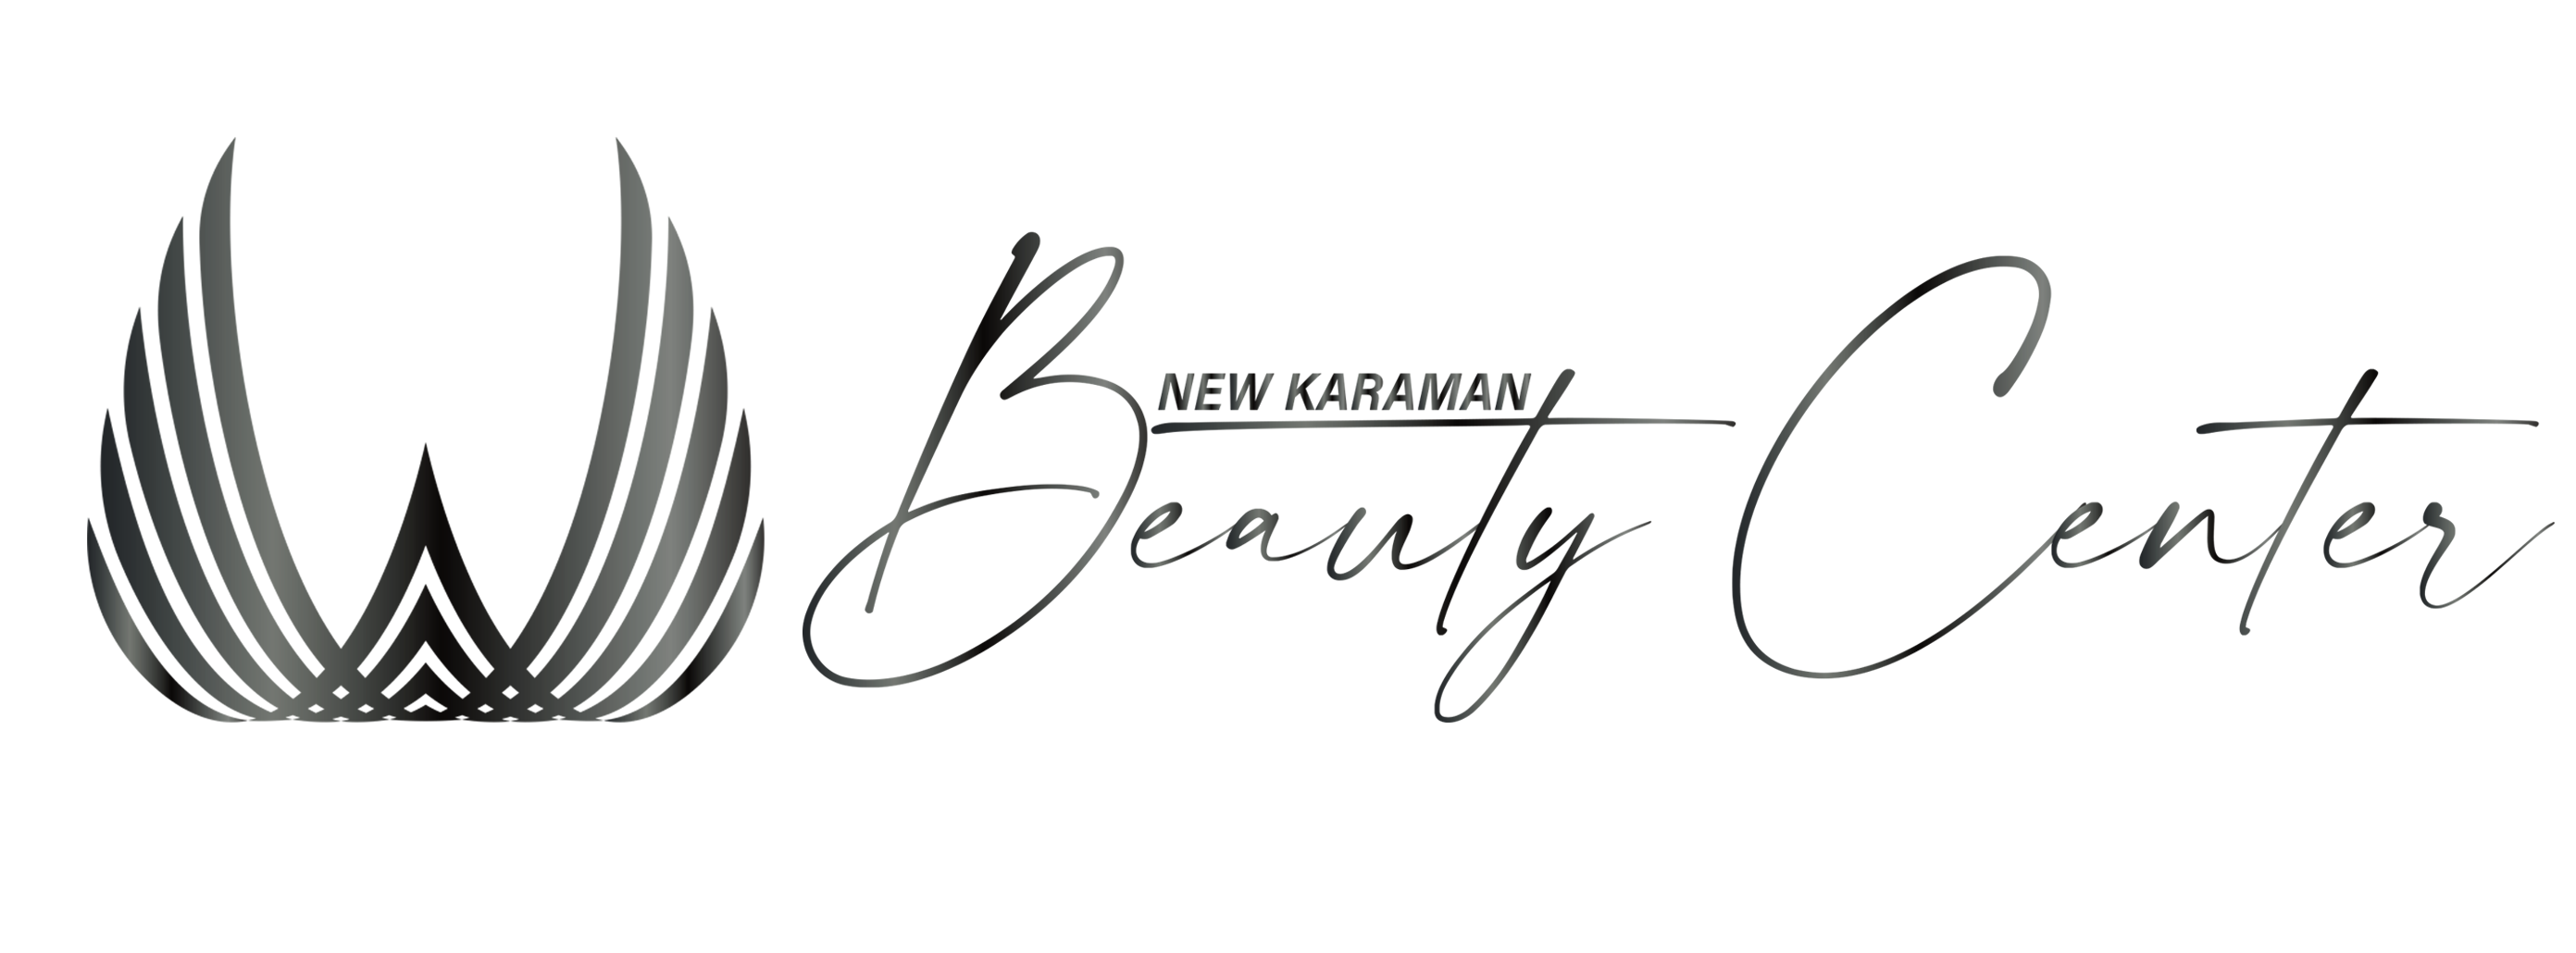 New Karaman Beauty Center